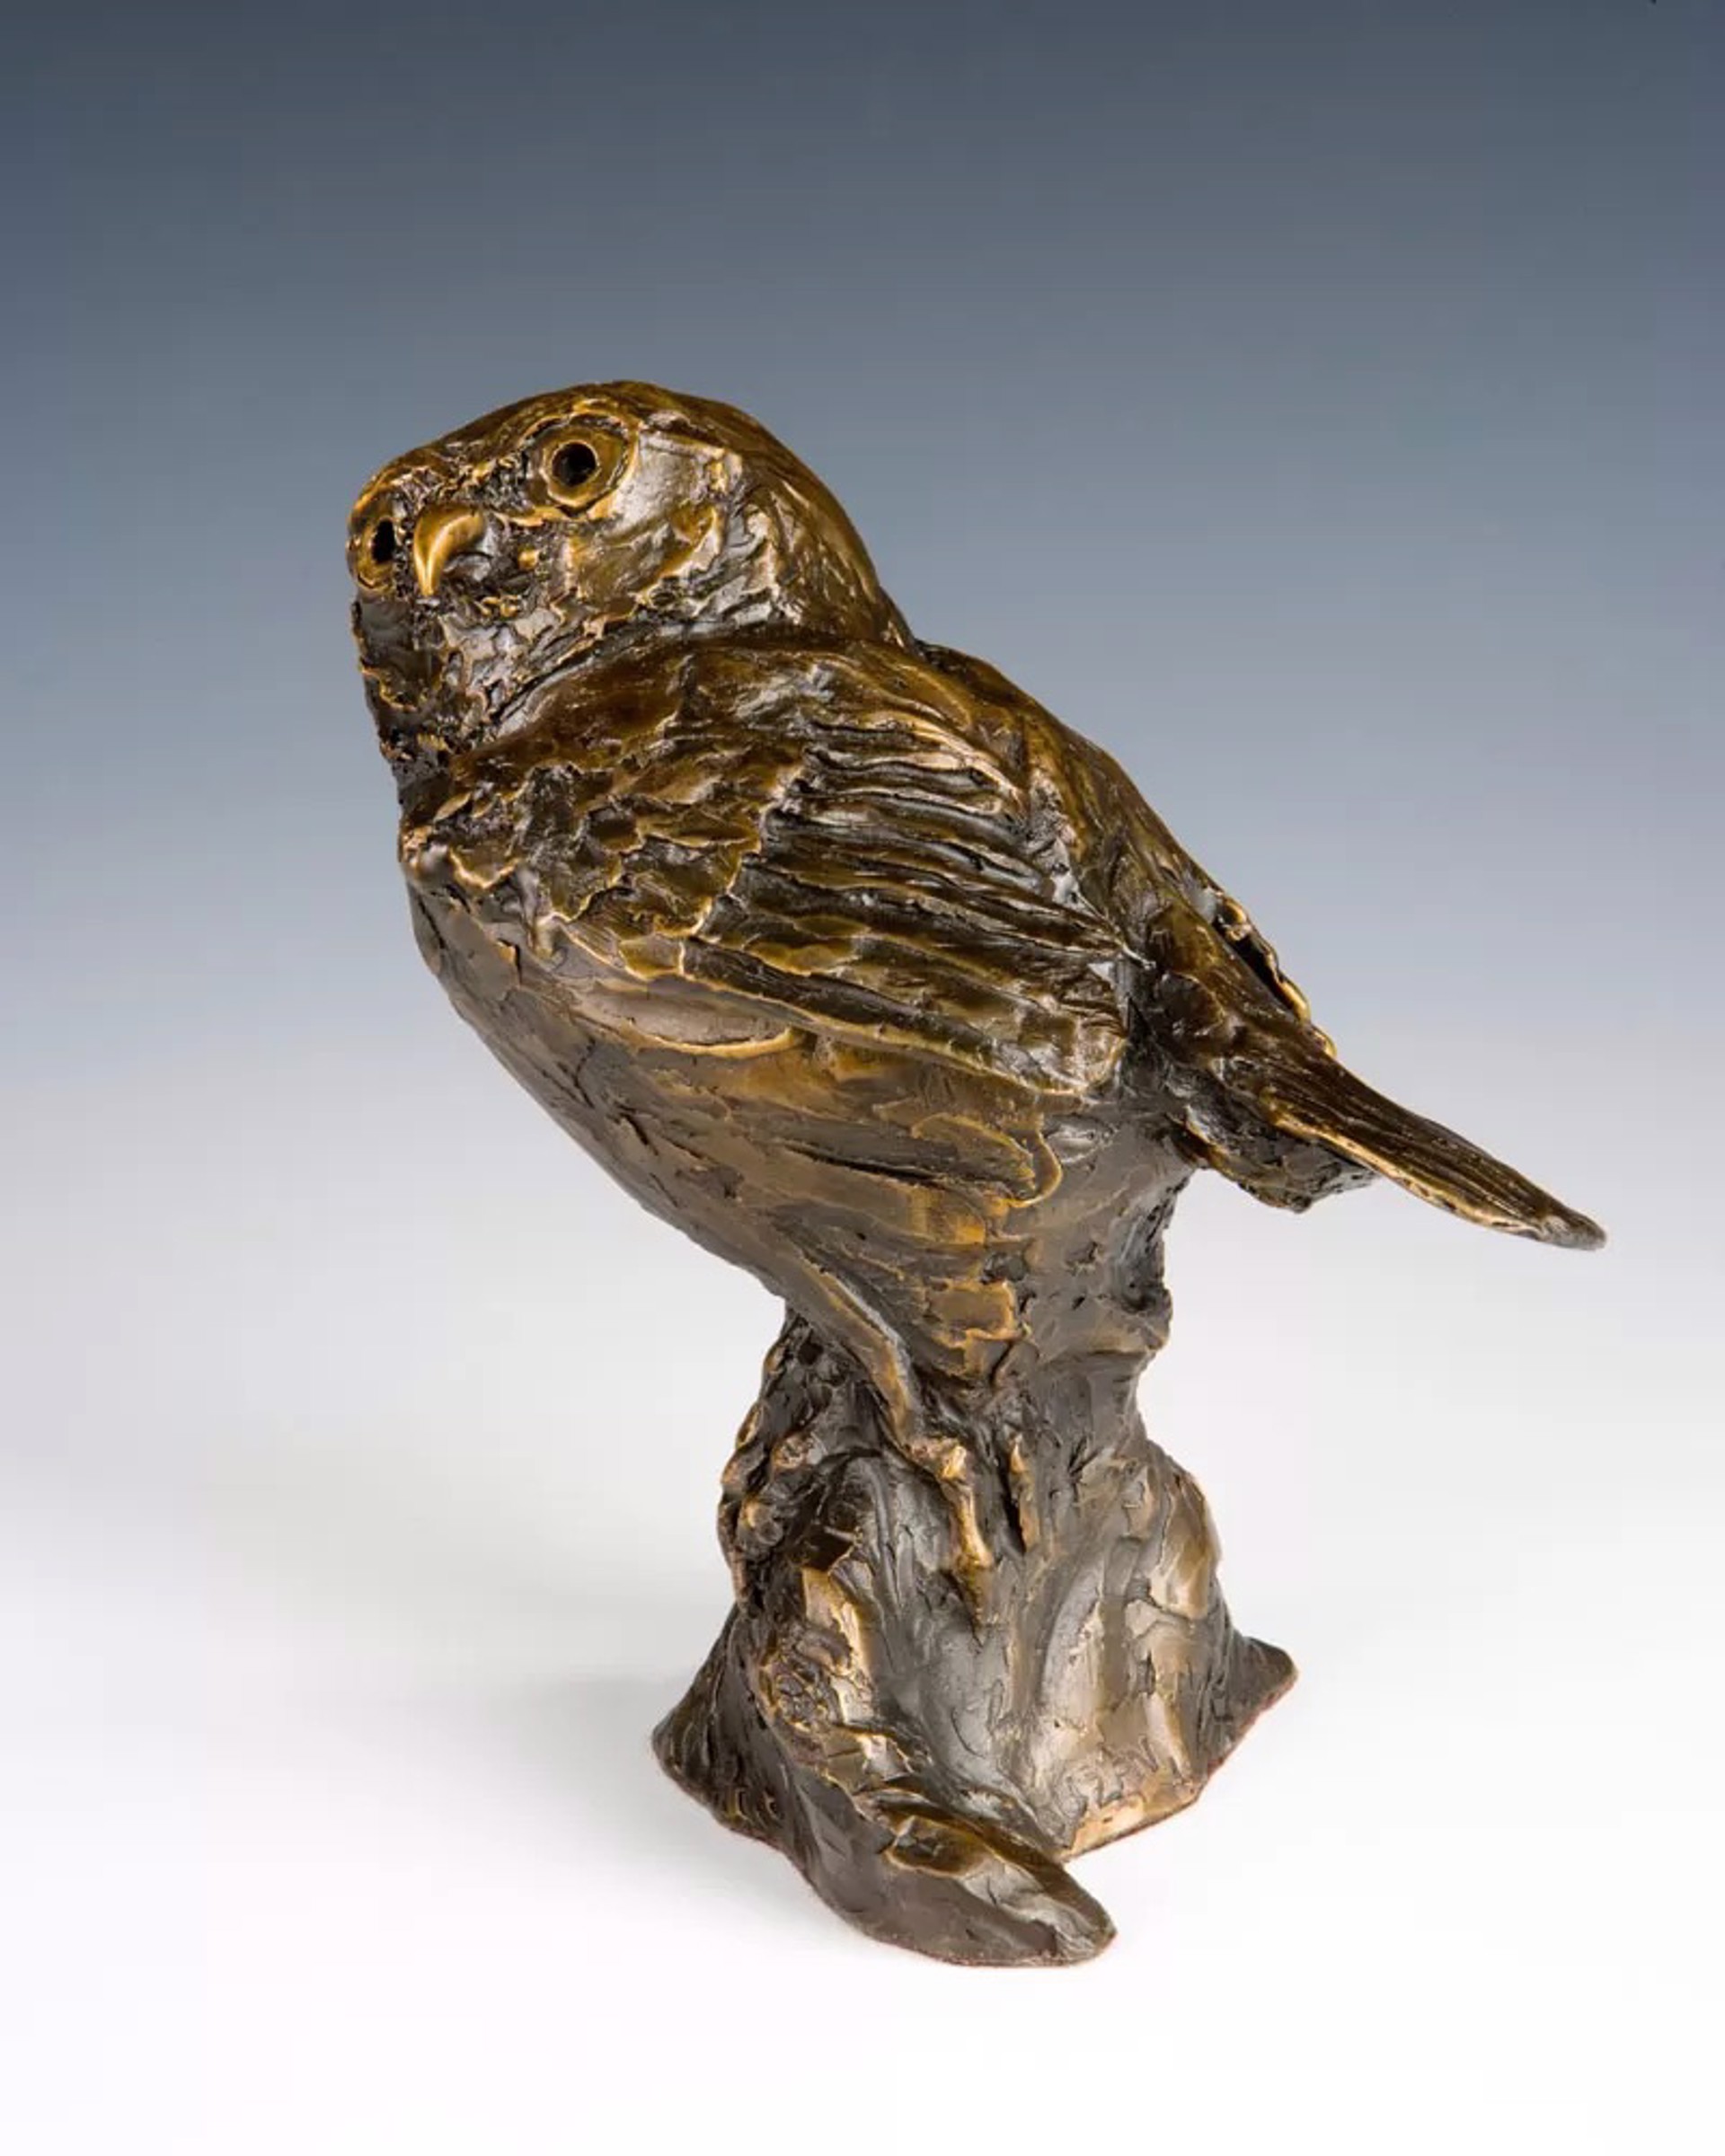 Pygmy Owl by Barbara Duzan